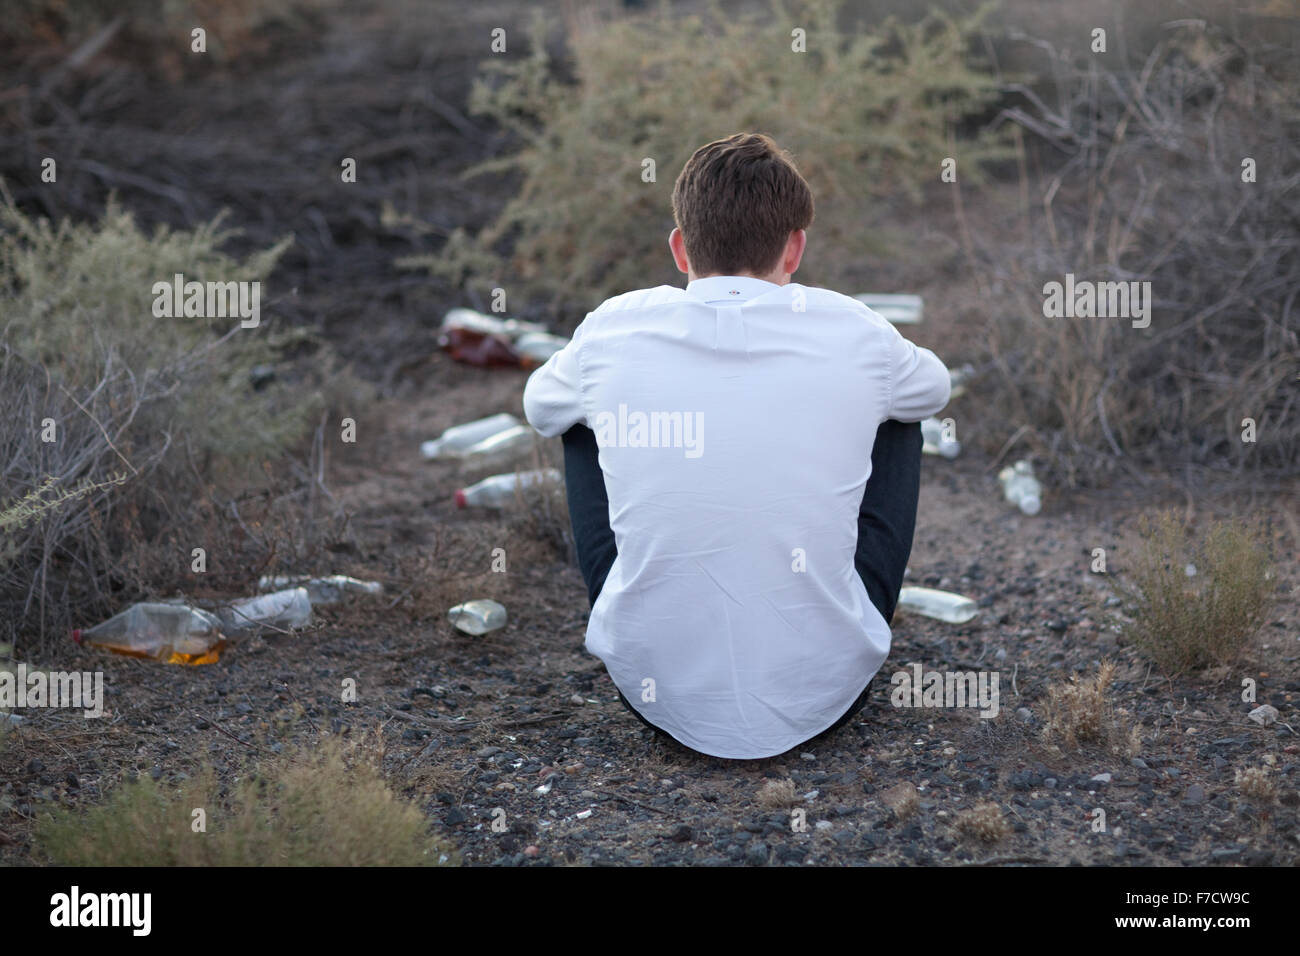 Ragazzo adolescente di bere alcolici al di fuori, seduti nella sporcizia con bottiglie vuote. Foto Stock